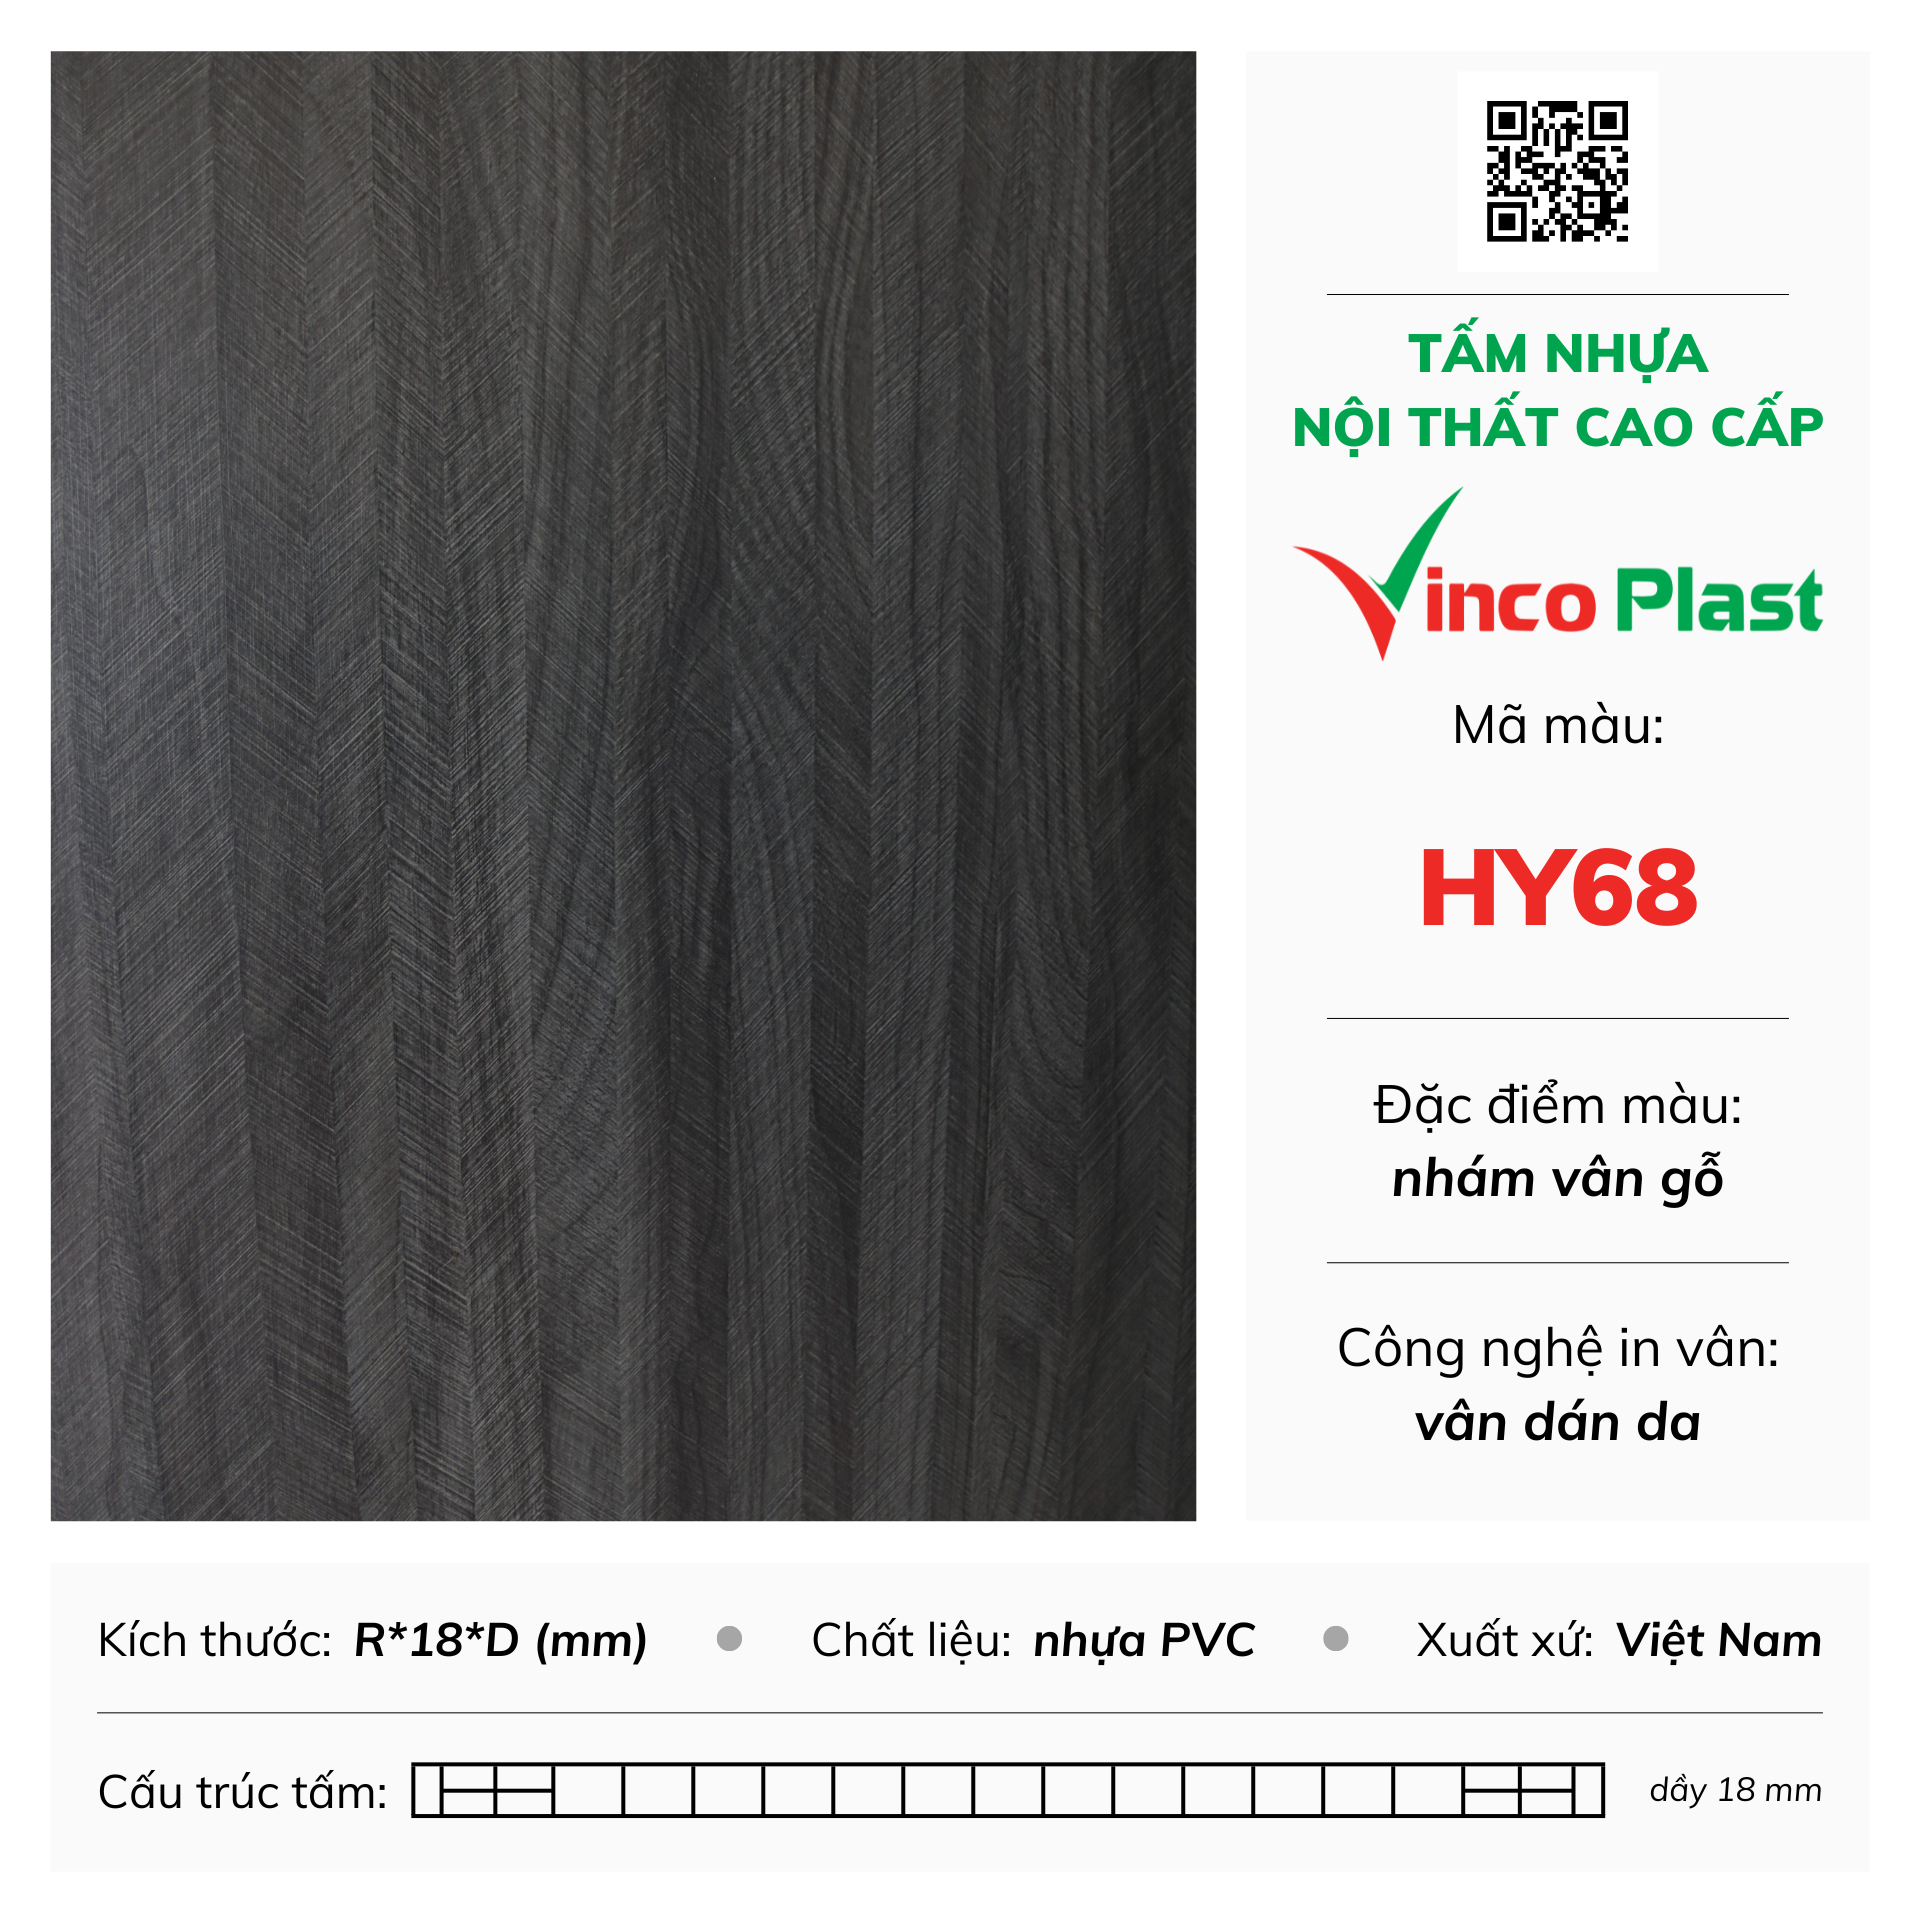 Tấm nhựa nội thất cao cấp Vincoplast màu HY68 (2)